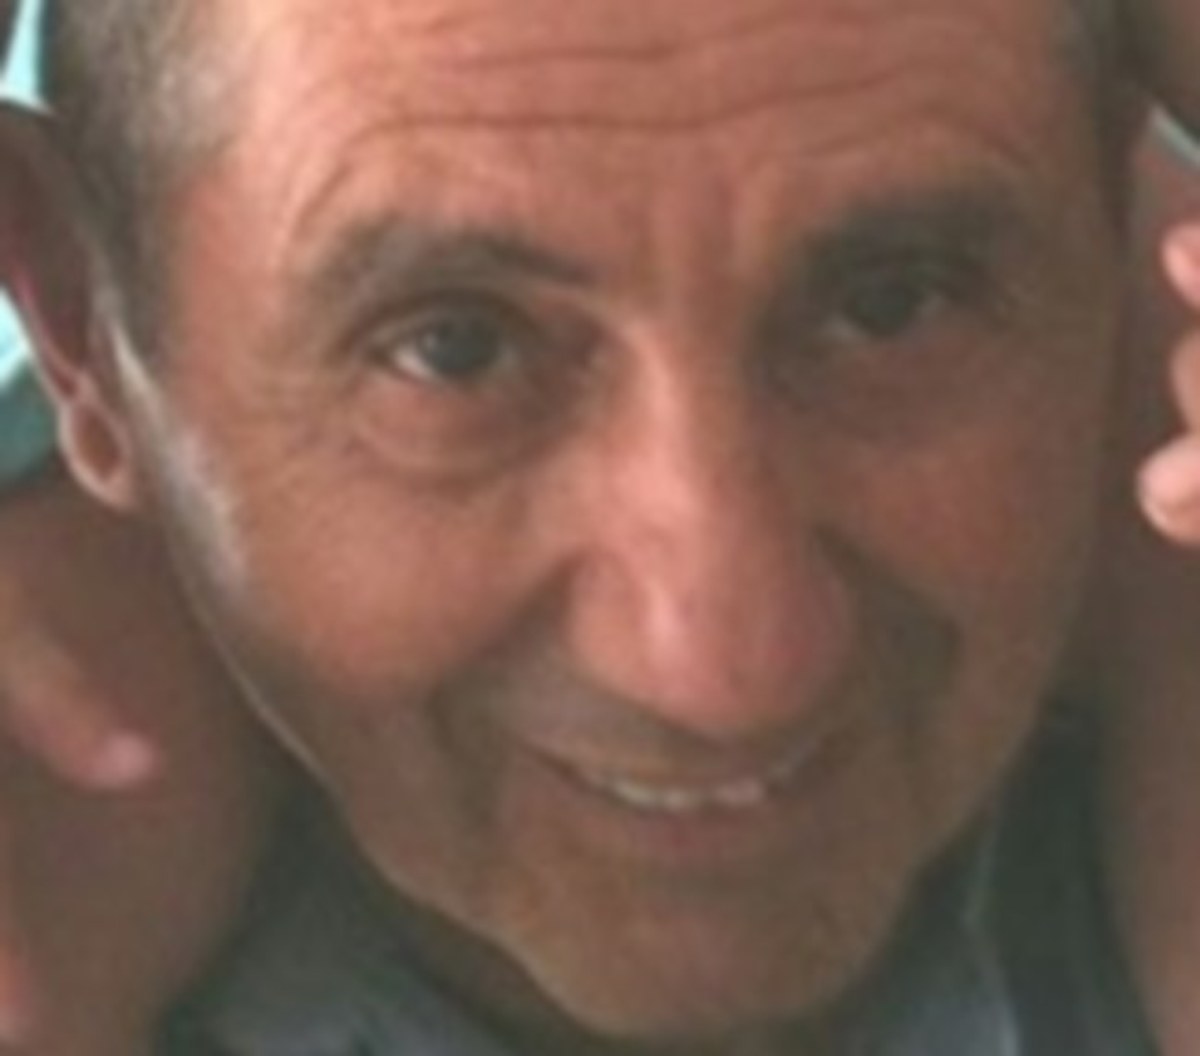 Καβάλα: Βρέθηκε νεκρός κάτω από μία βάρκα ο Ιωάννης Τσιμπρικίδης – Τραγική κατάληξη στις έρευνες!